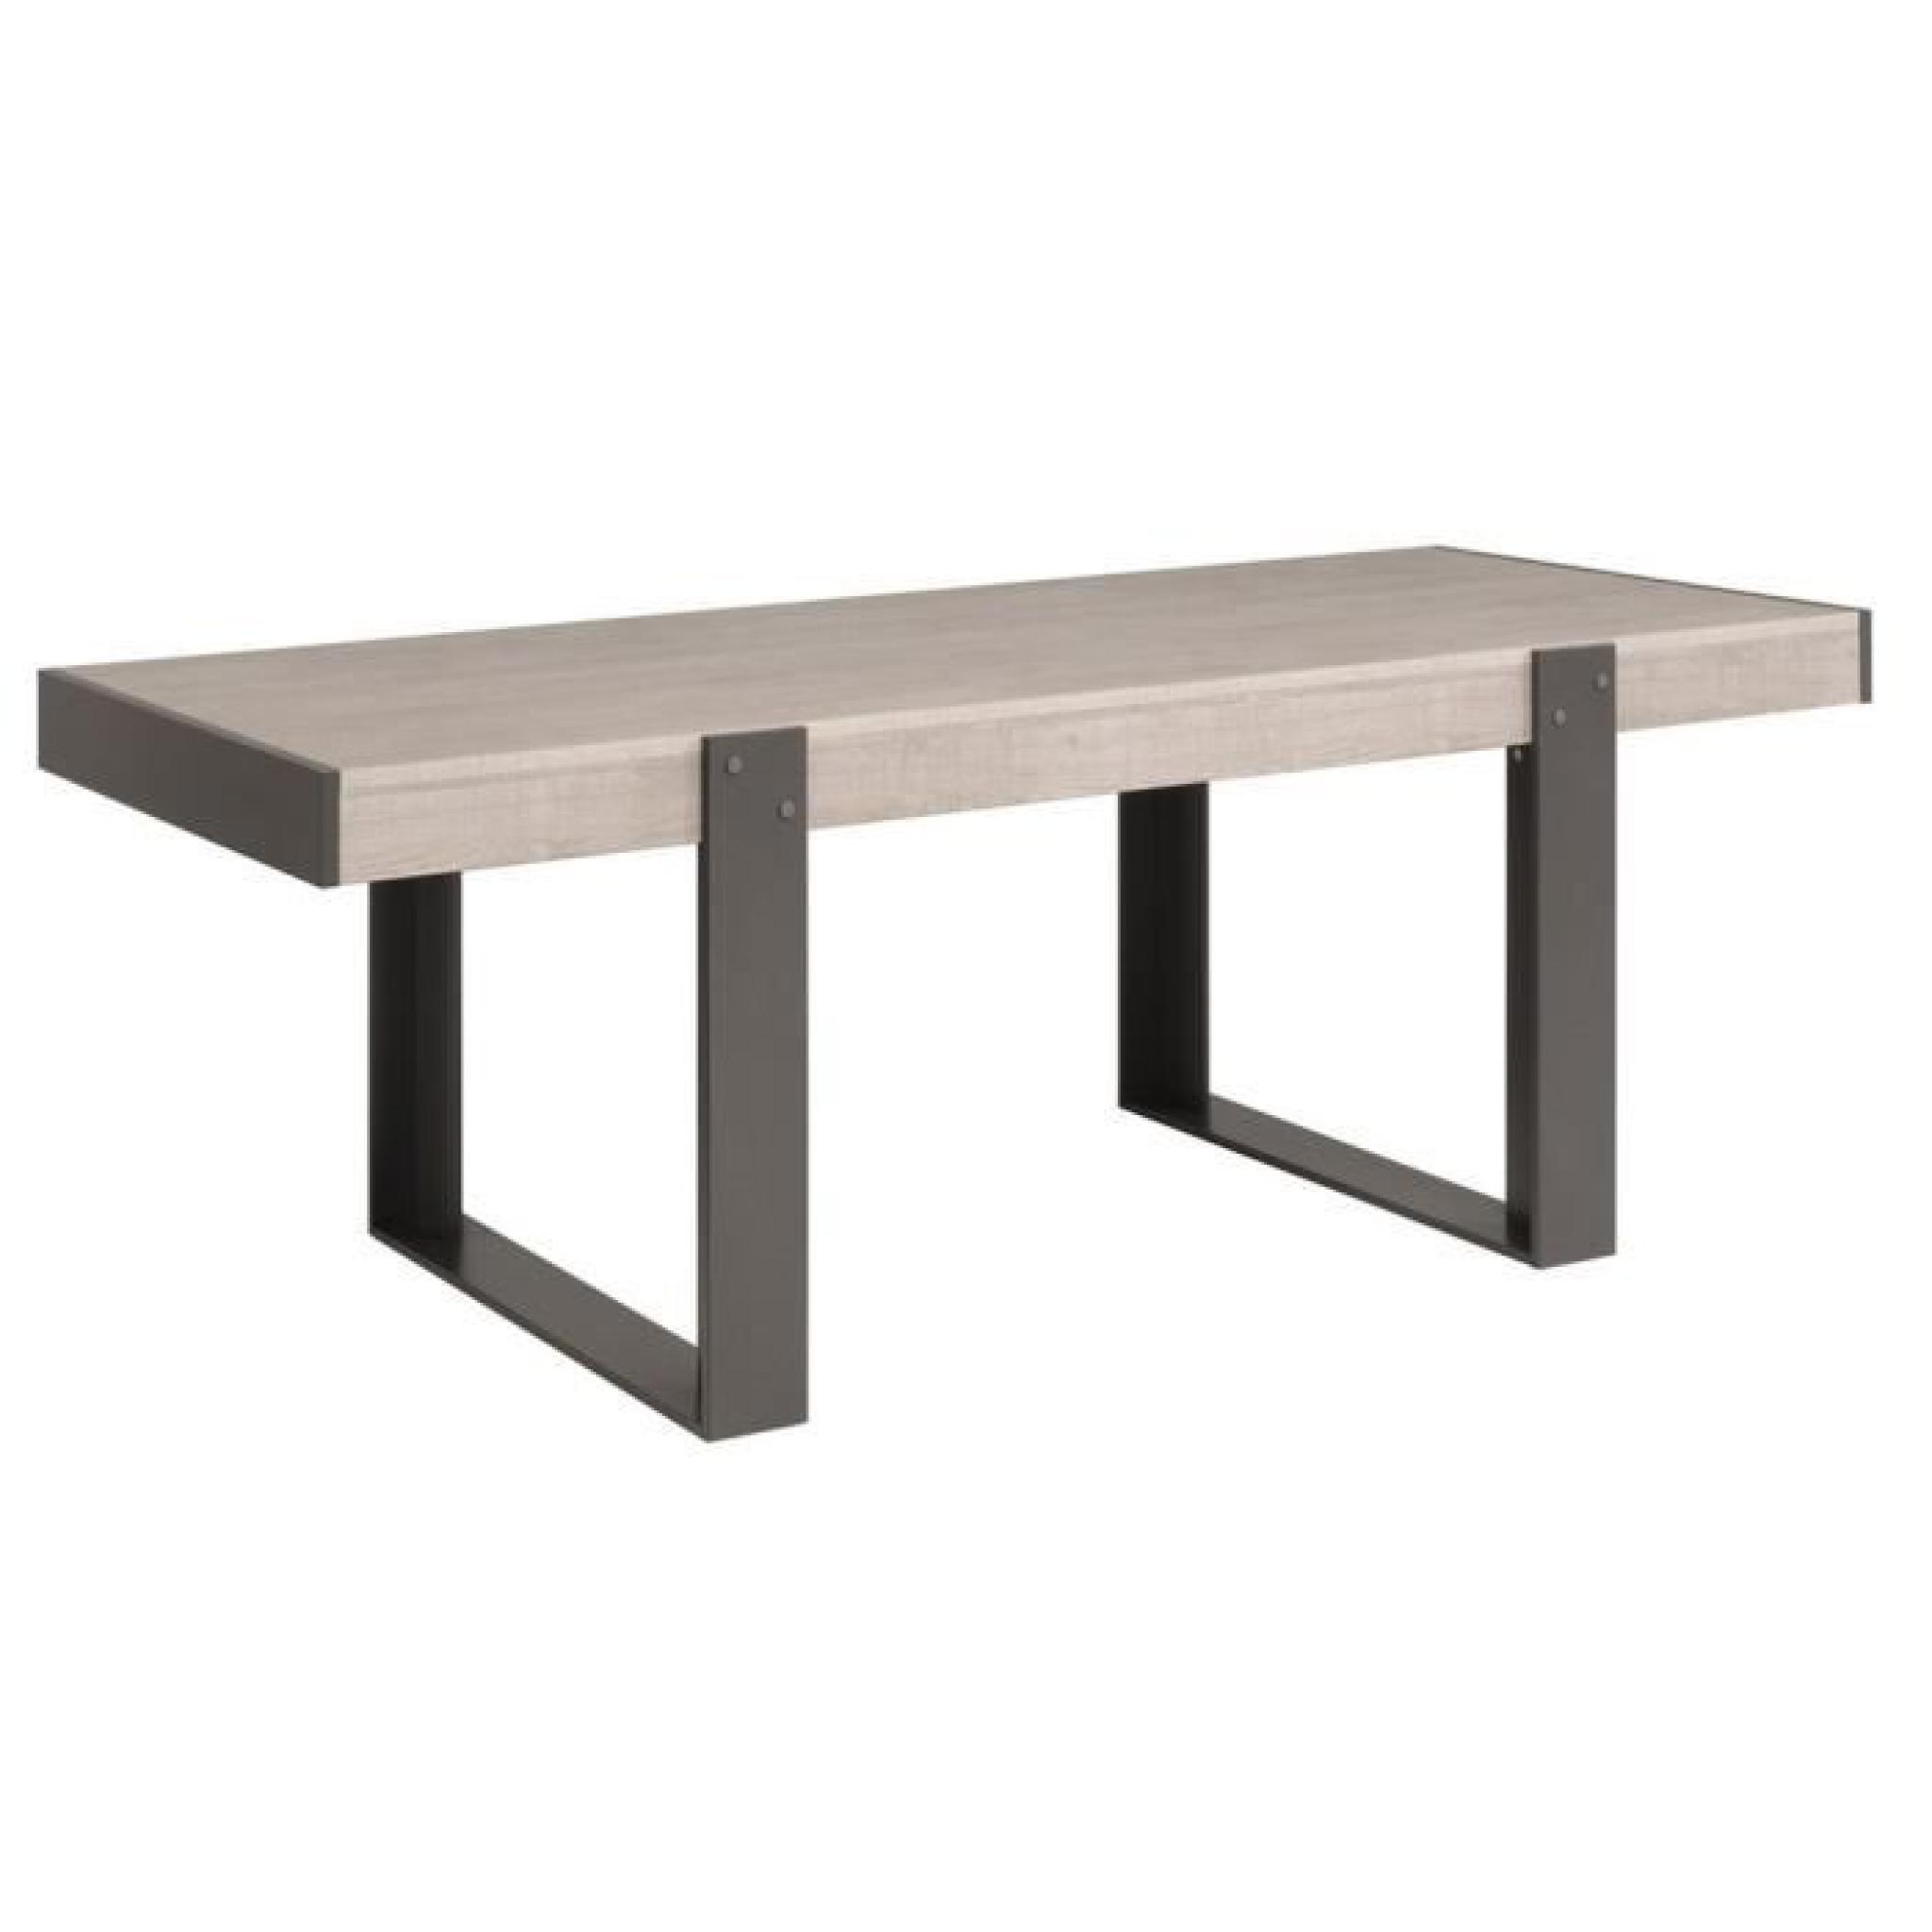 Table à manger coloris gris loft, H 78 x L 223 x P 90 cm